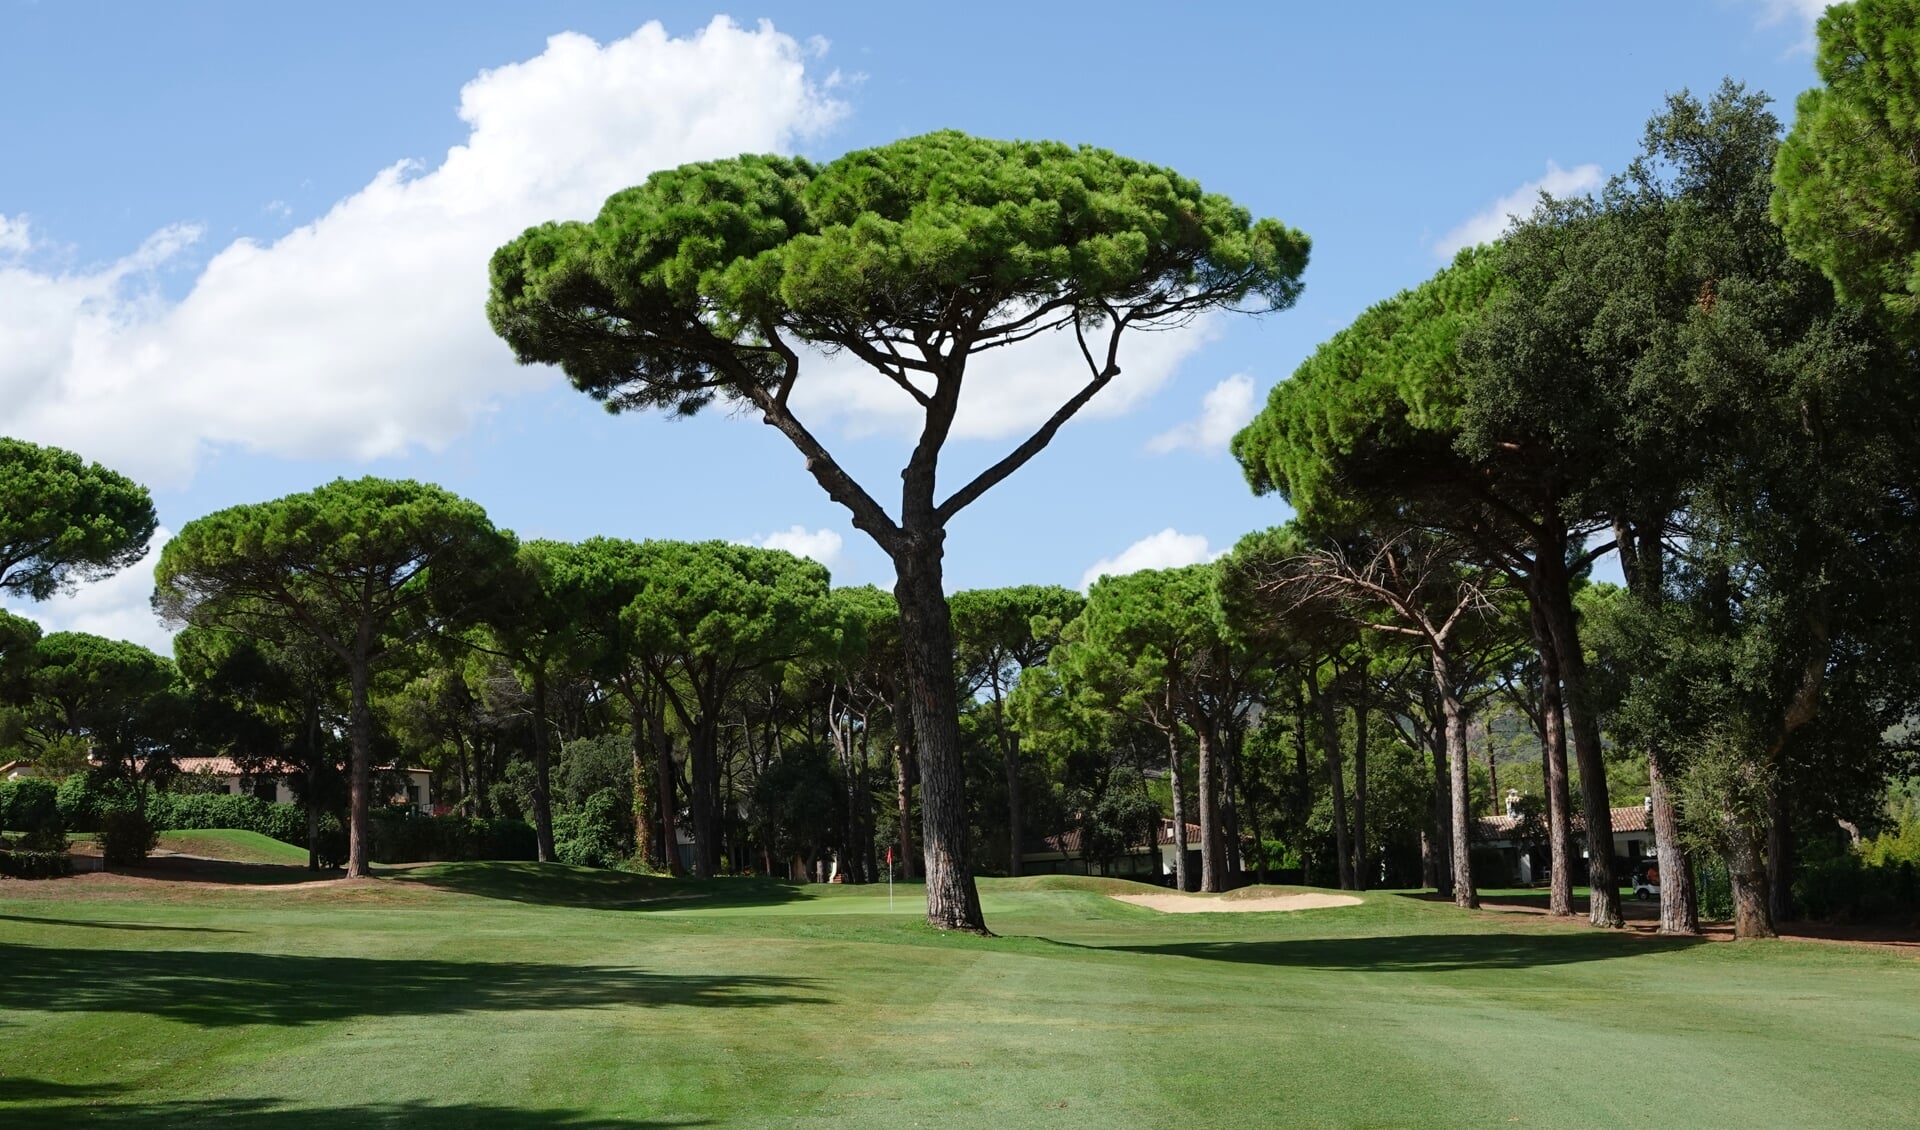 Golf Costa Brava is met al z'n typerende bomen even fraai als lastig. (Foto NGM / Eric Korver)